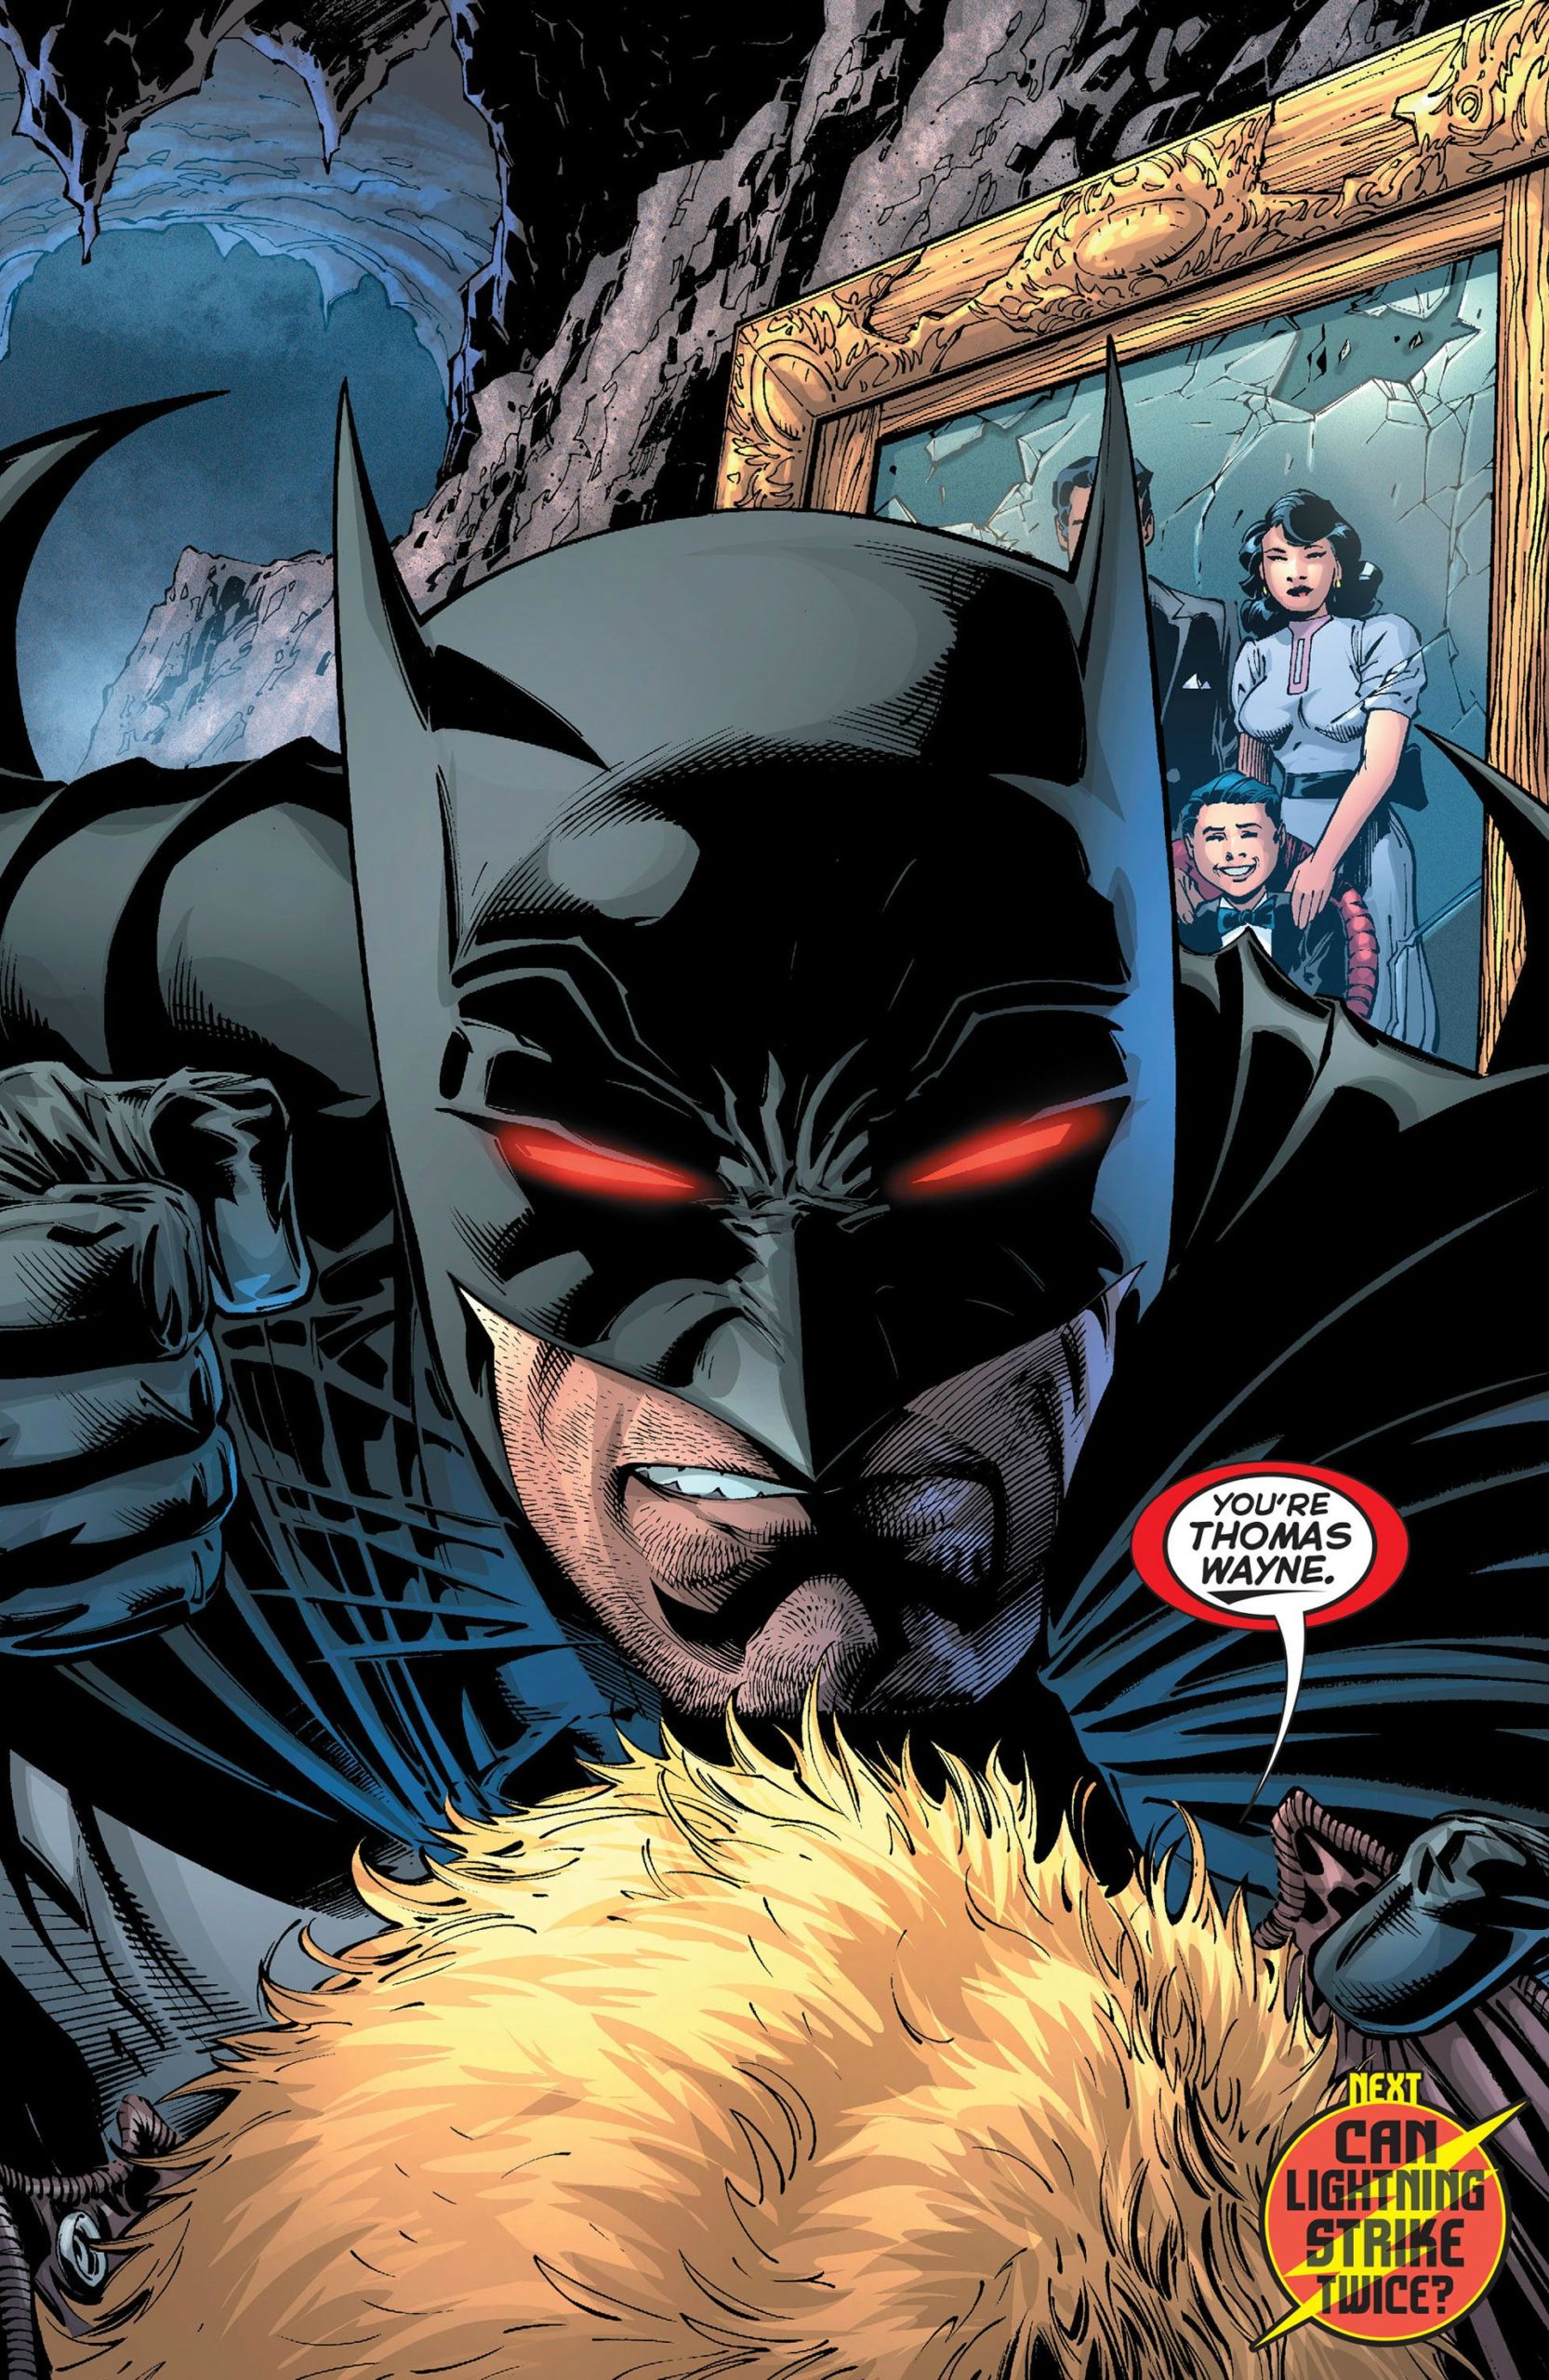 Batman's true identity is revealed in Flashpoint.